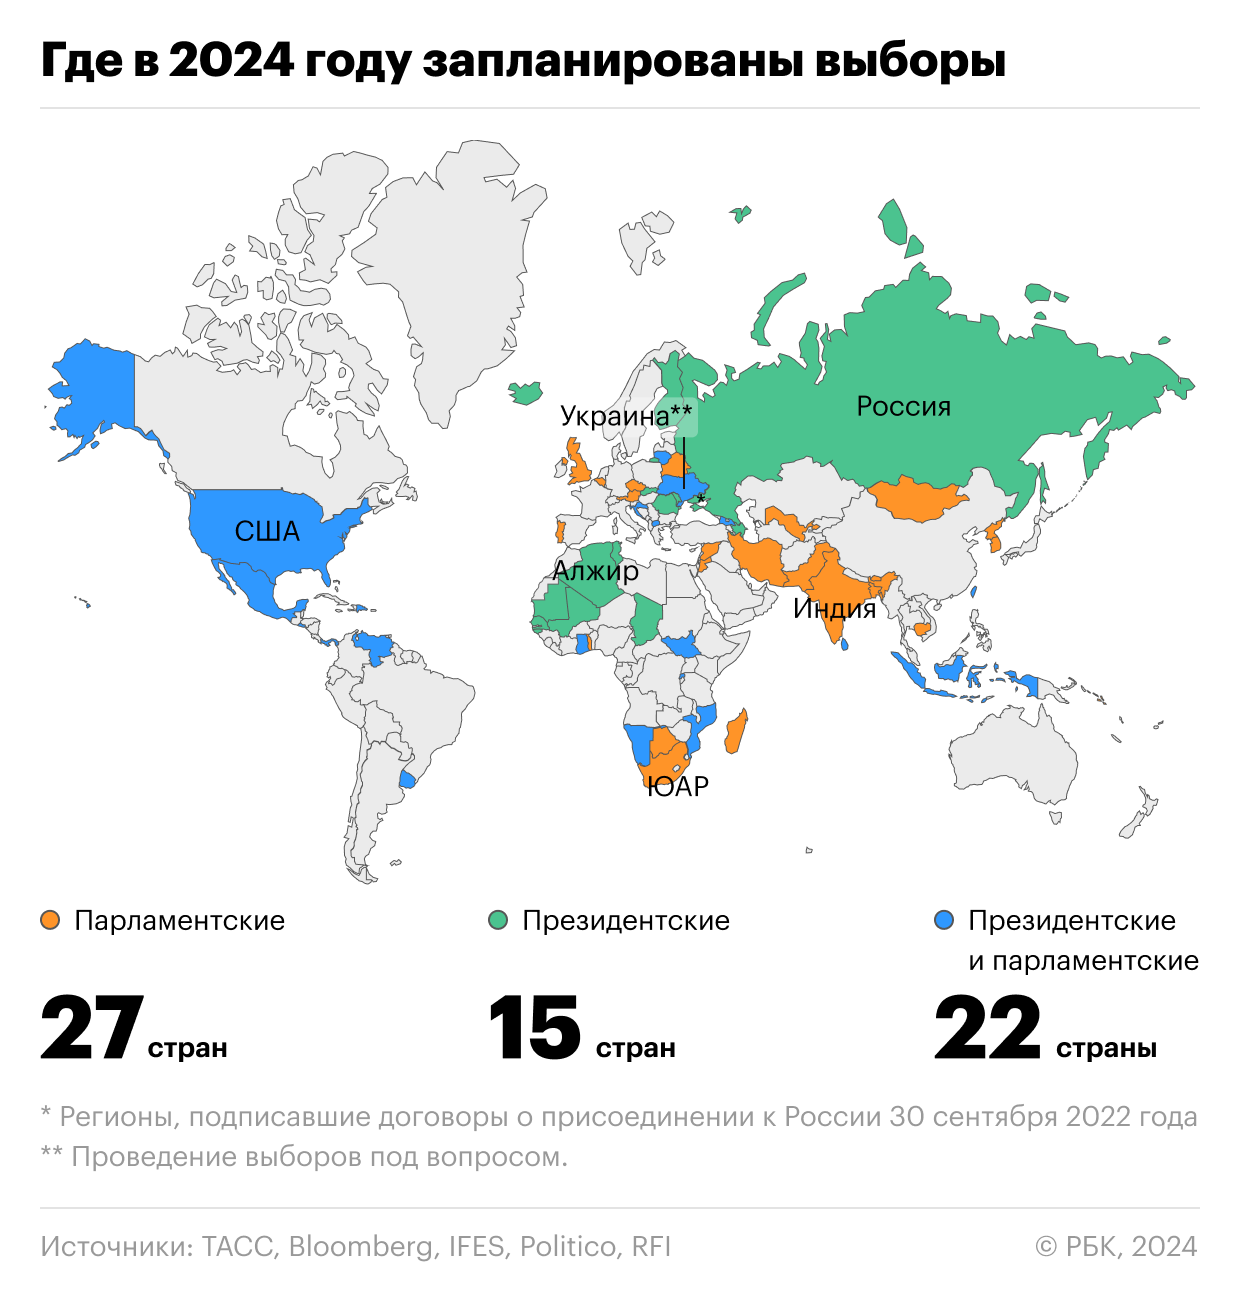 Половина жителей Земли придут на выборы в 2024 году: календарь и карта